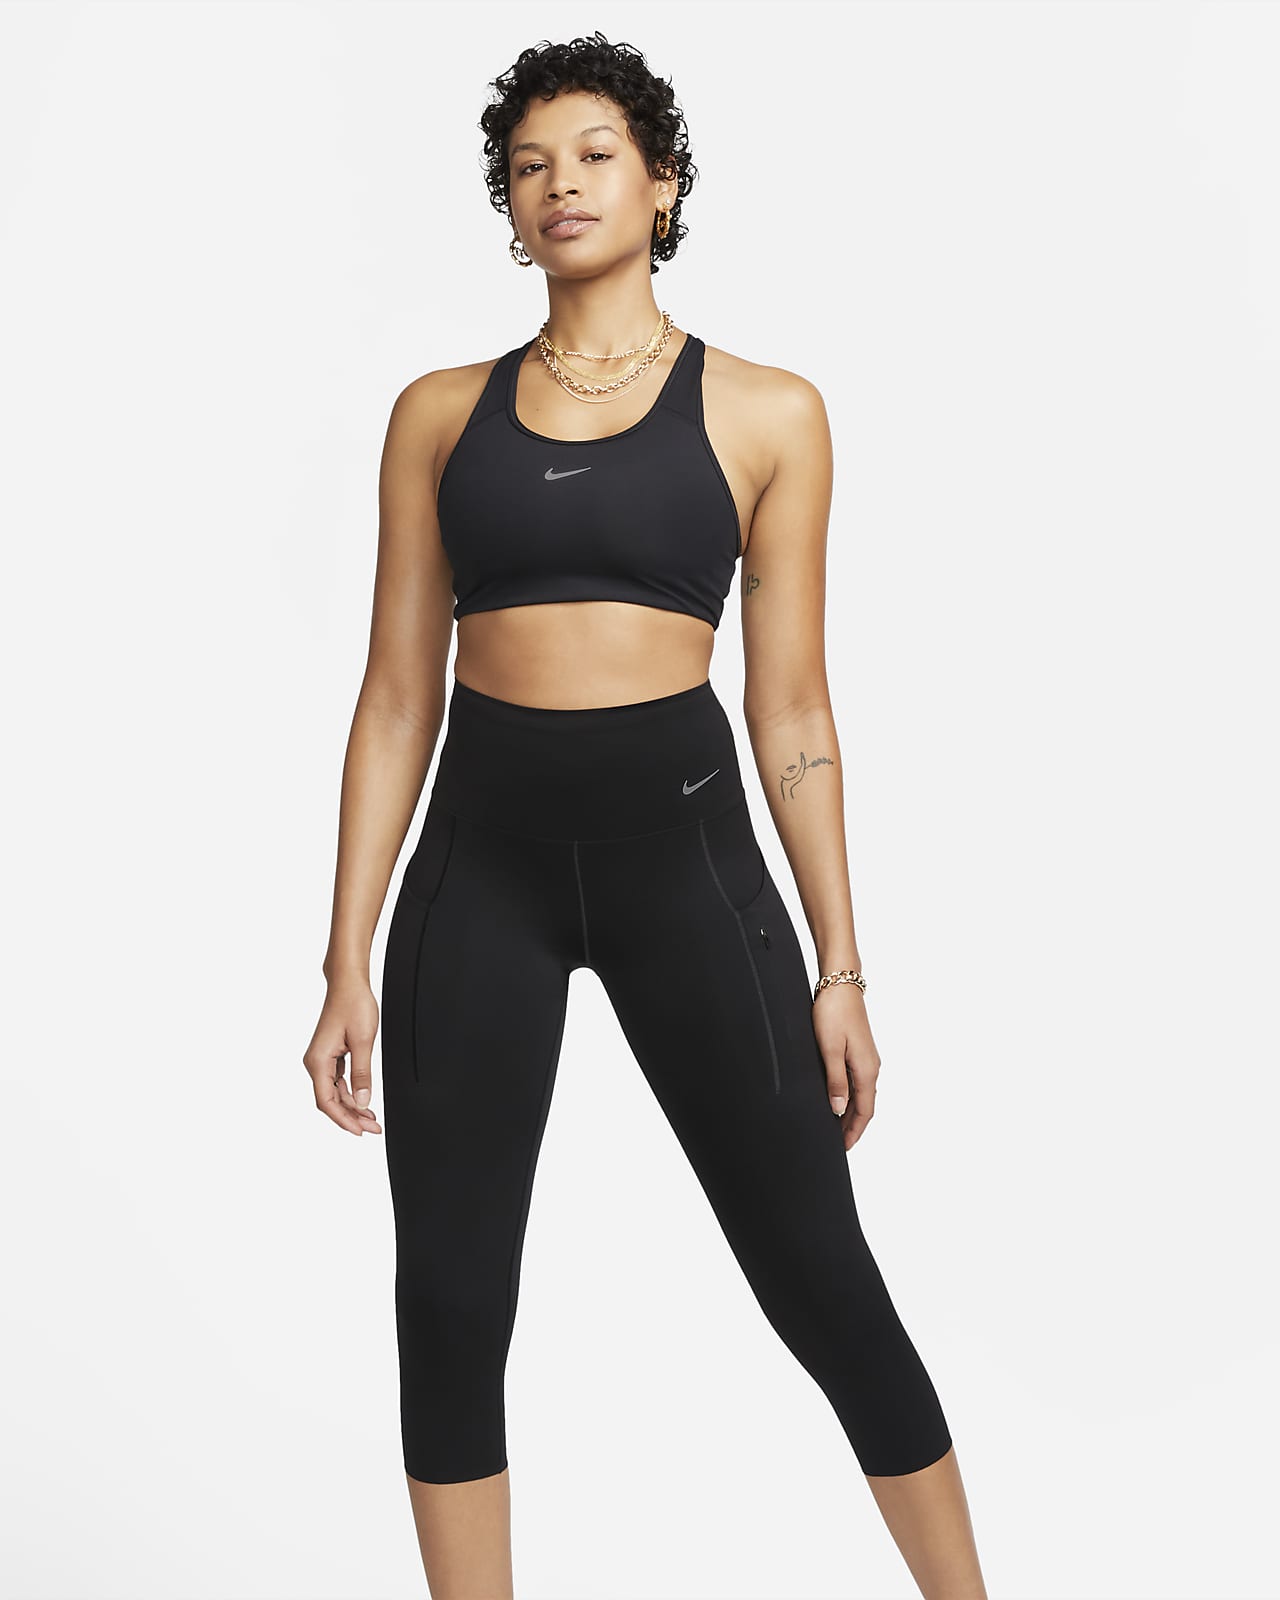 Nike Go kortere legging met hoge taille, zakken en complete ondersteuning voor dames